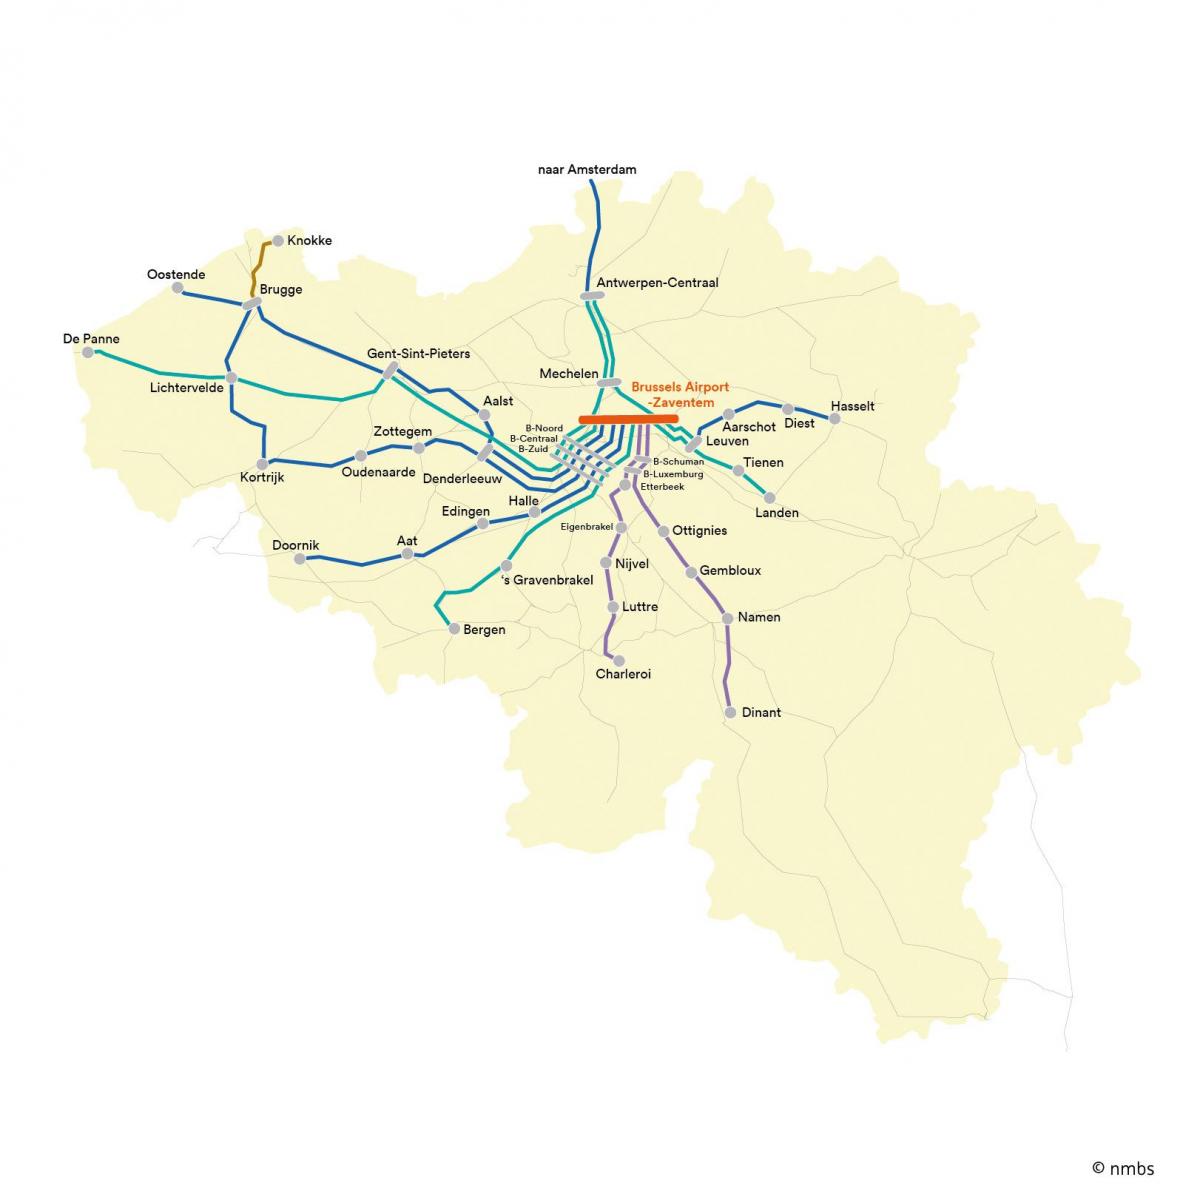 ブリュッセル列車の空港地図